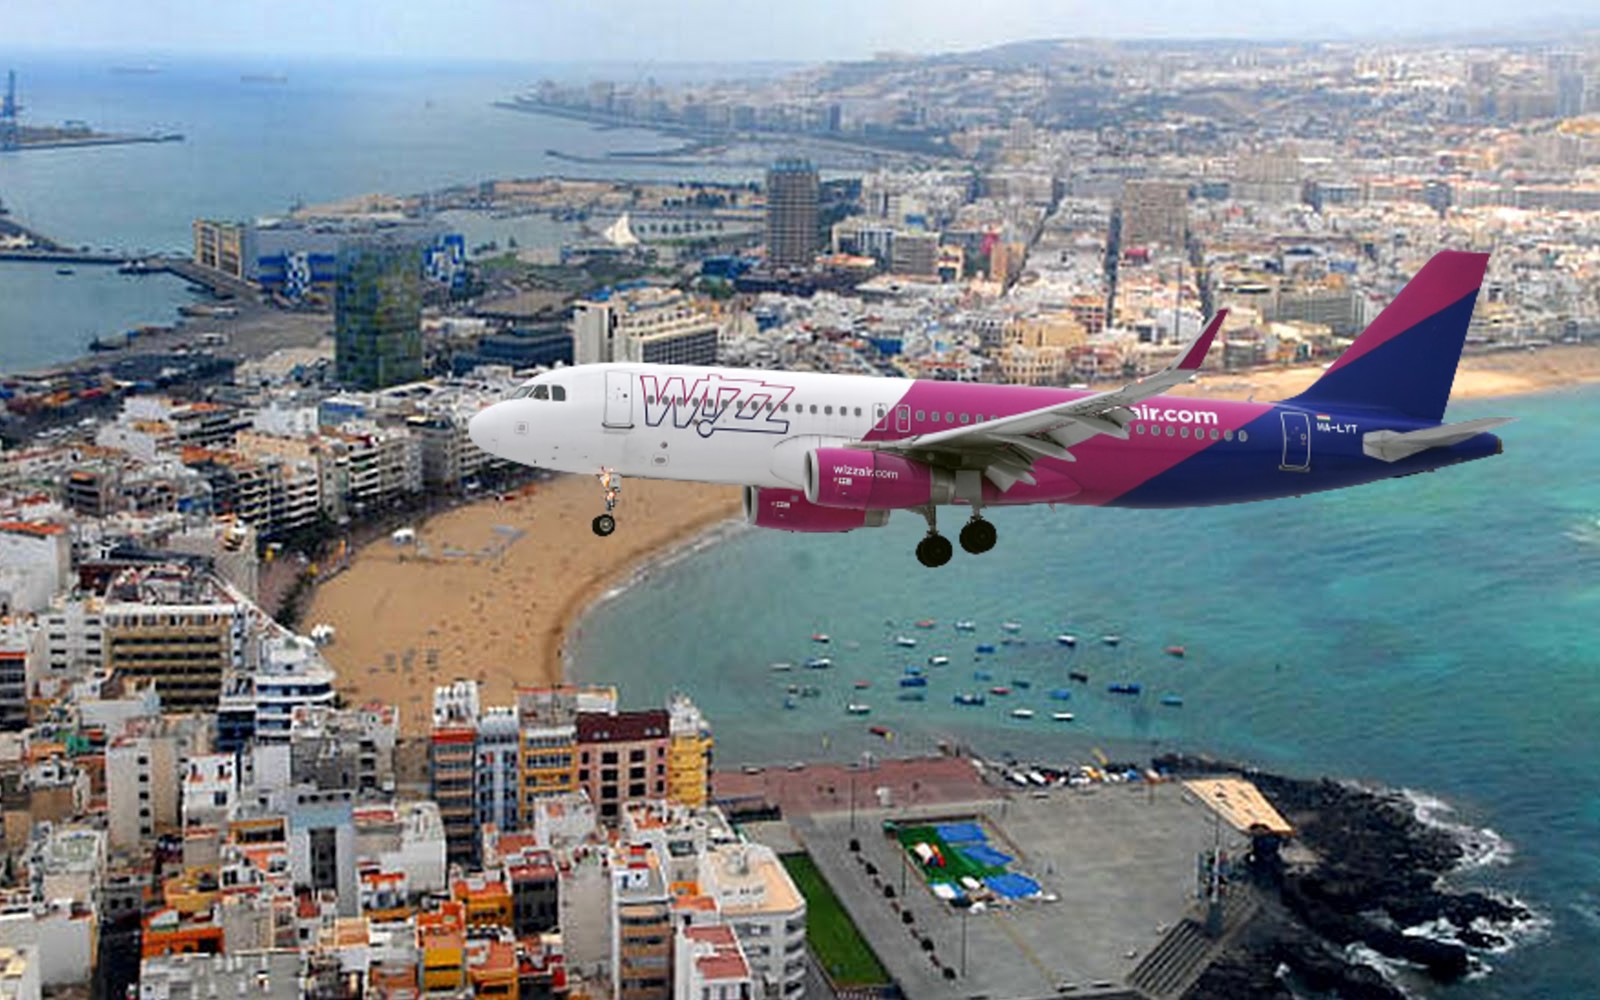 Wizz Air, España